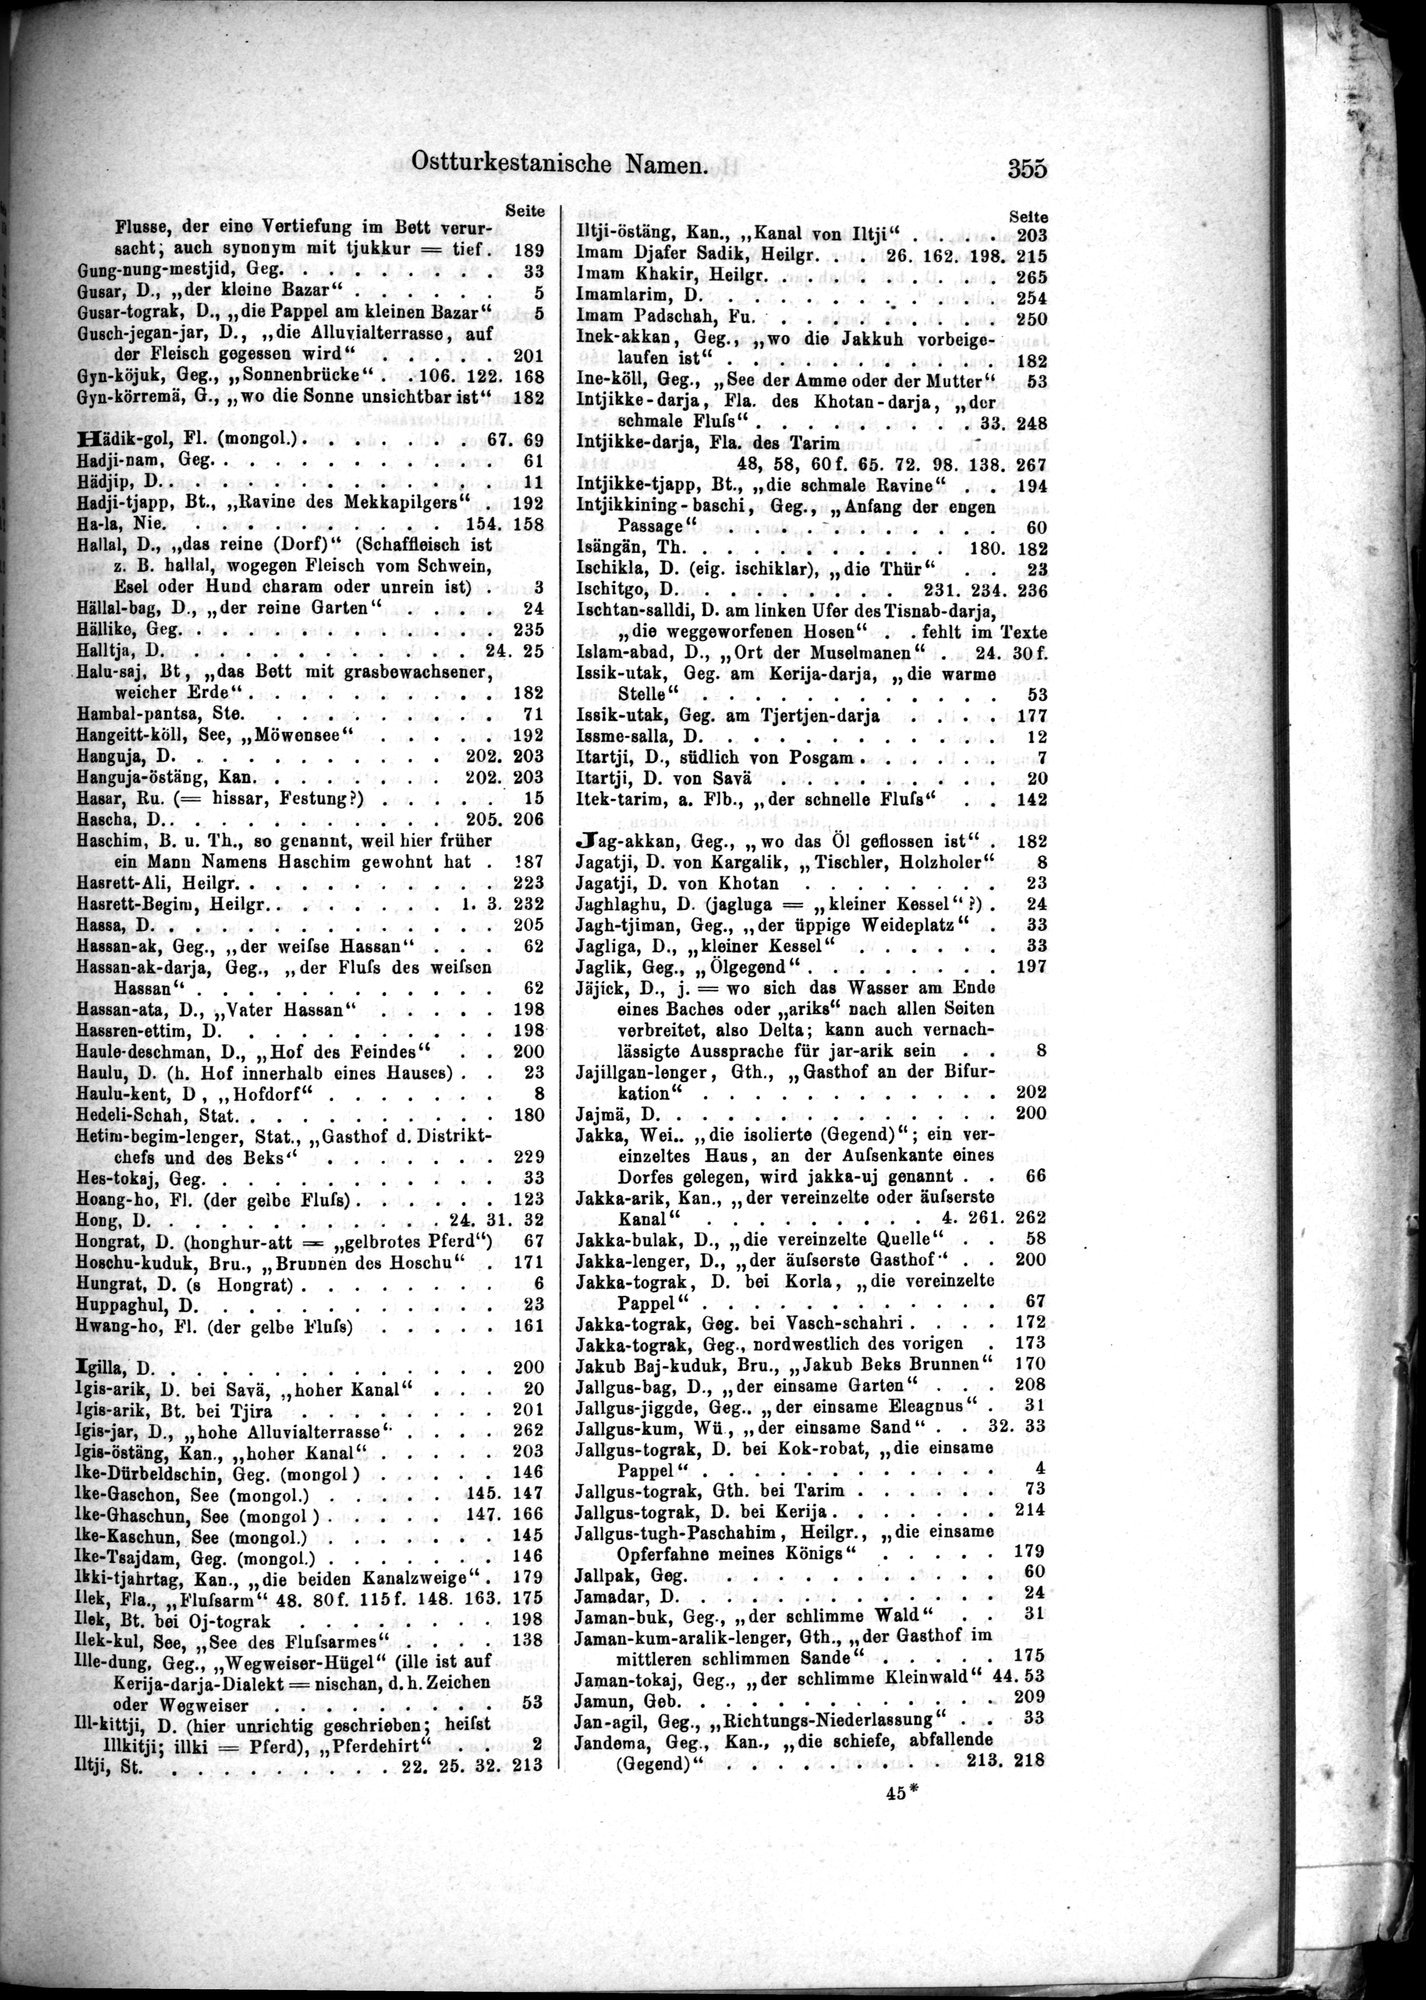 Die Geographische-Wissenschaftlichen Ergebnisse meiner Reisen in Zentralasien, 1894-1897 : vol.1 / Page 367 (Grayscale High Resolution Image)